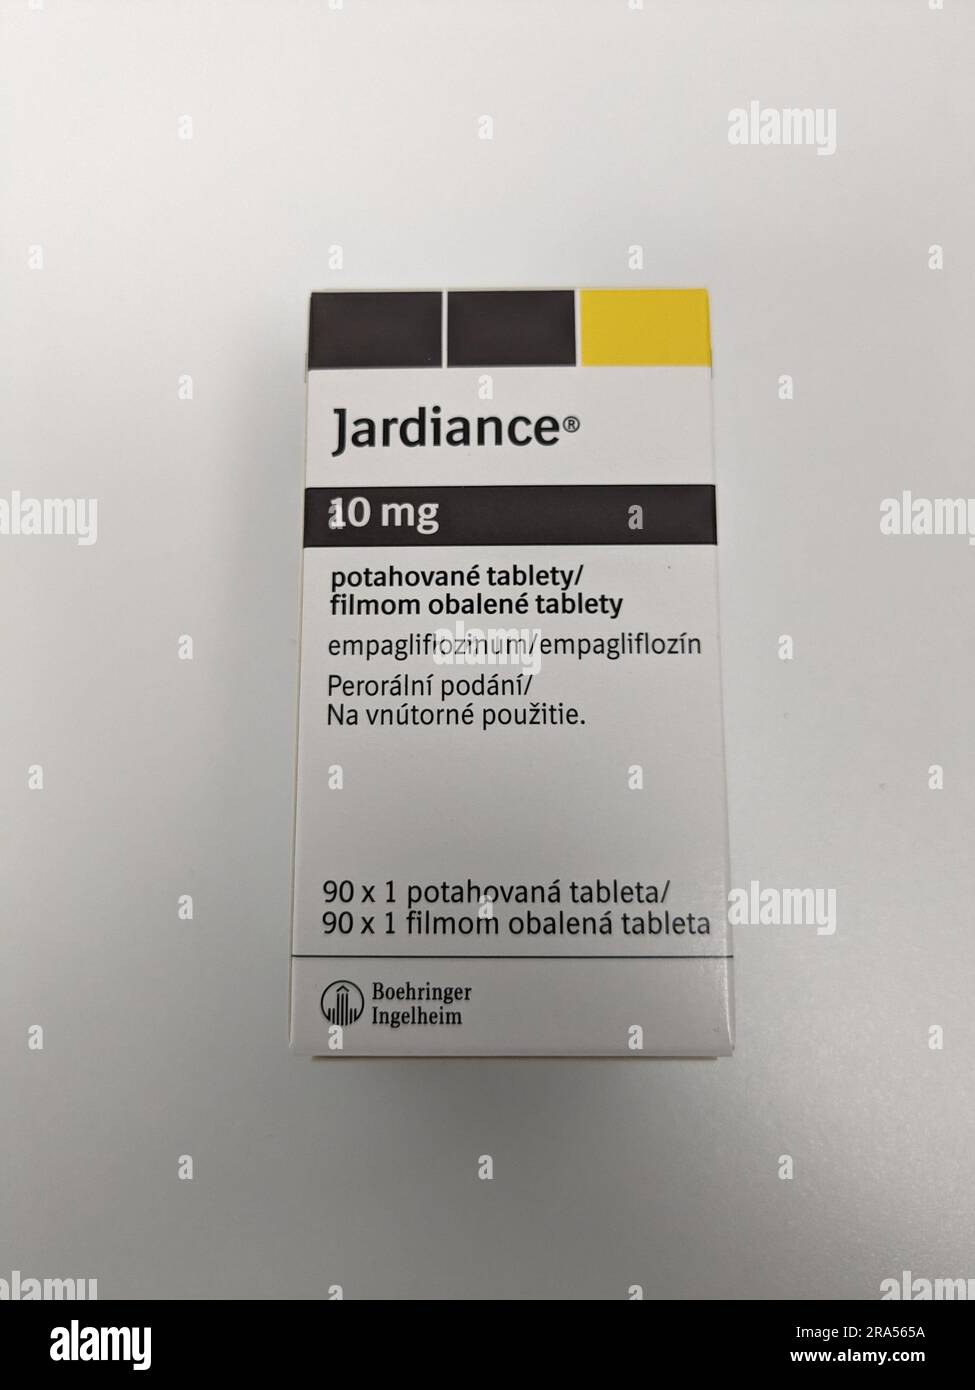 Farmacista che detiene Jardiance Box medicine per diabete mellito (DM) o iperglicemia in farmacia farmacia farmacia.boehringer ingelheim Empagliflozin an A. Foto Stock